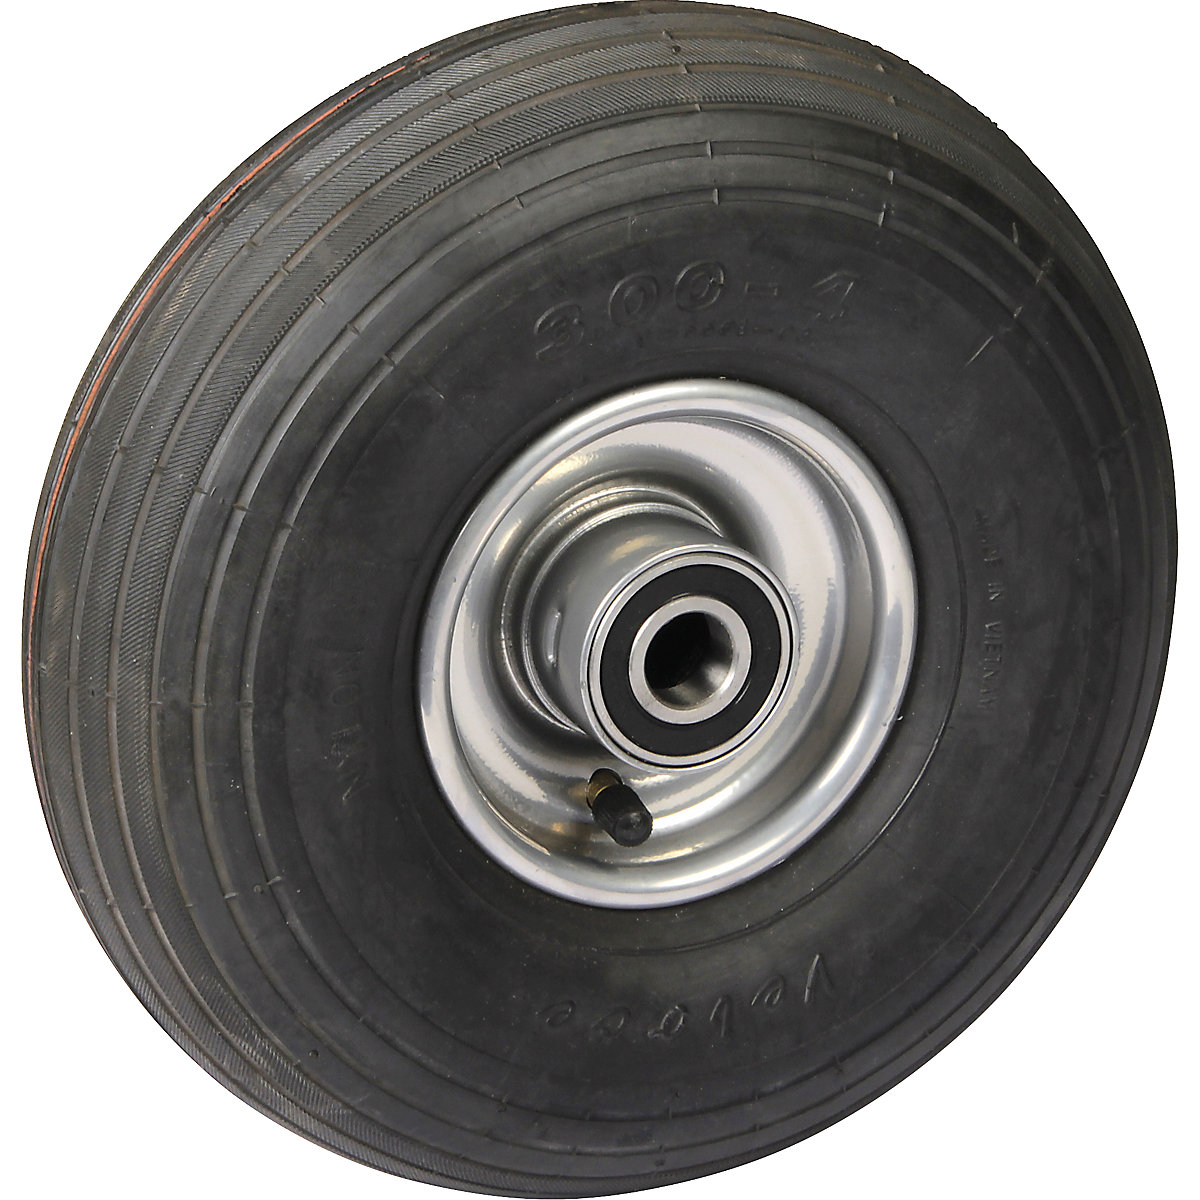 Pneumatiques, roue avec jante en tôle d'acier en 1 partie, Ø x largeur roues 260 x 85 mm, profilé de pneu rainuré, avec roulement à billes-4